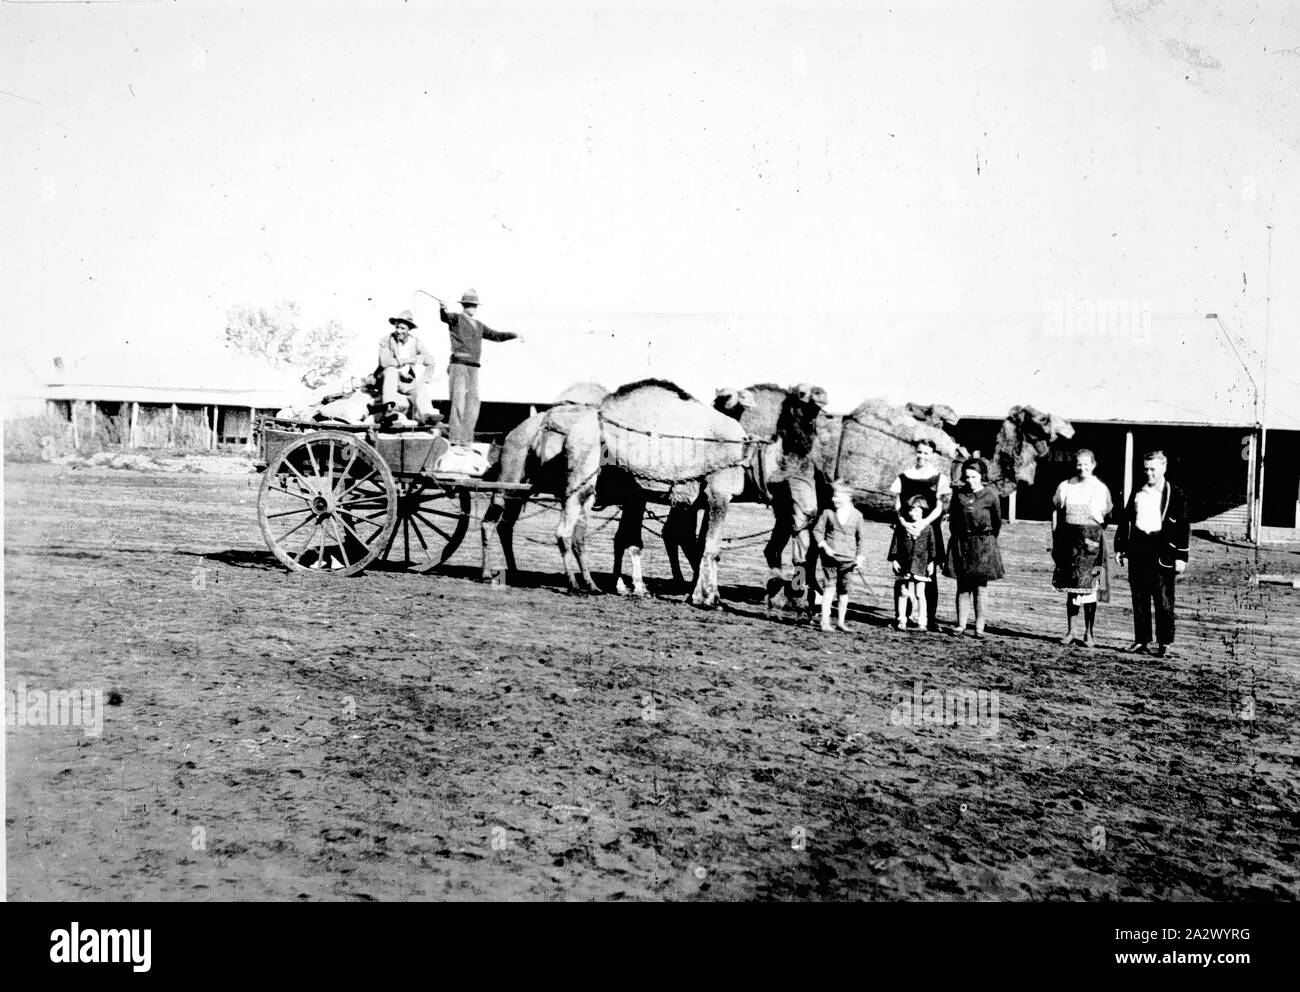 Négatif - Hungerford, Queensland, 1927, un groupe familial à l'avant d'un chariot tiré par des chameaux. Il y a deux hommes sur le wagon Banque D'Images